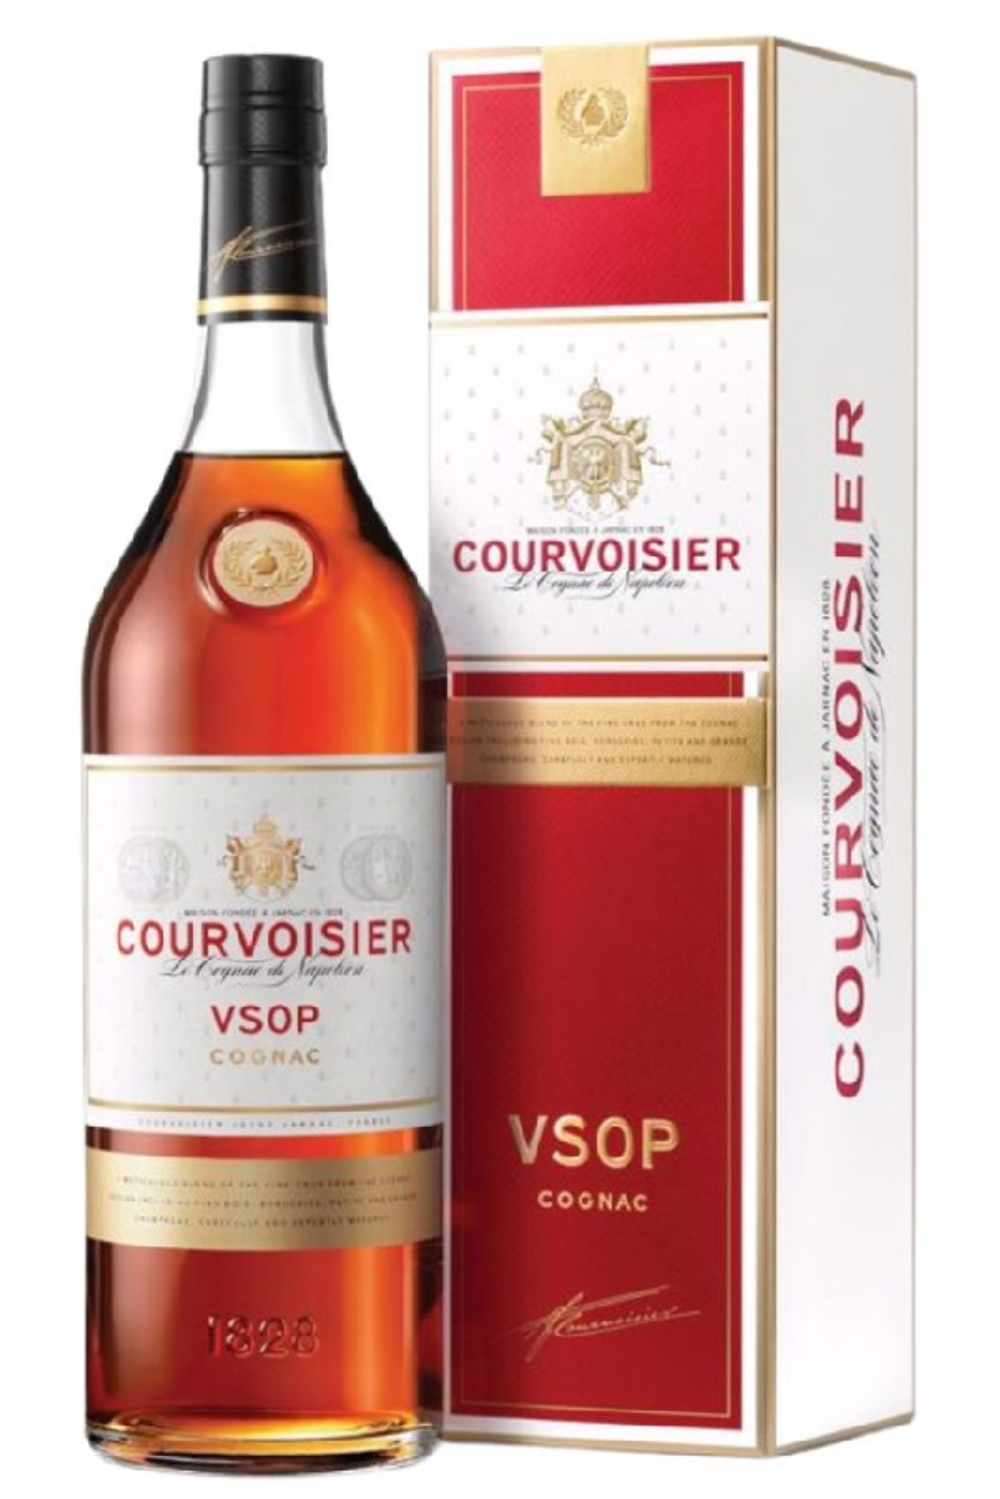 WineVins Courvoisier VSOP